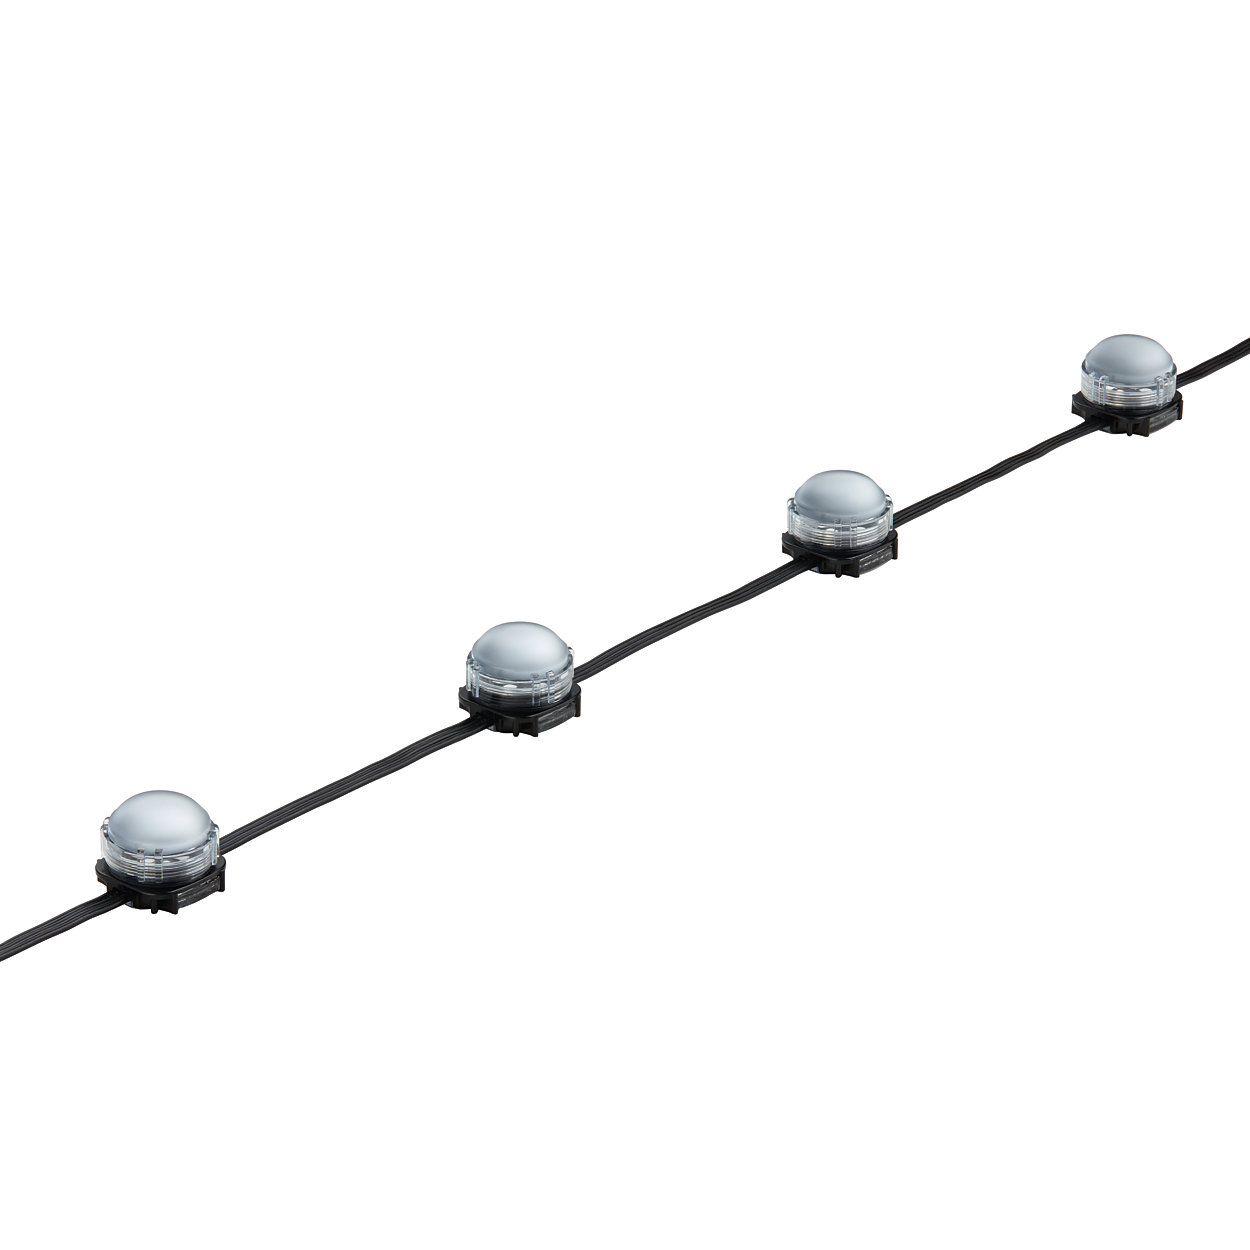 iColor Flex LMX gen2 – flexible strands of large high-intensity LED nodes with intelligent color light